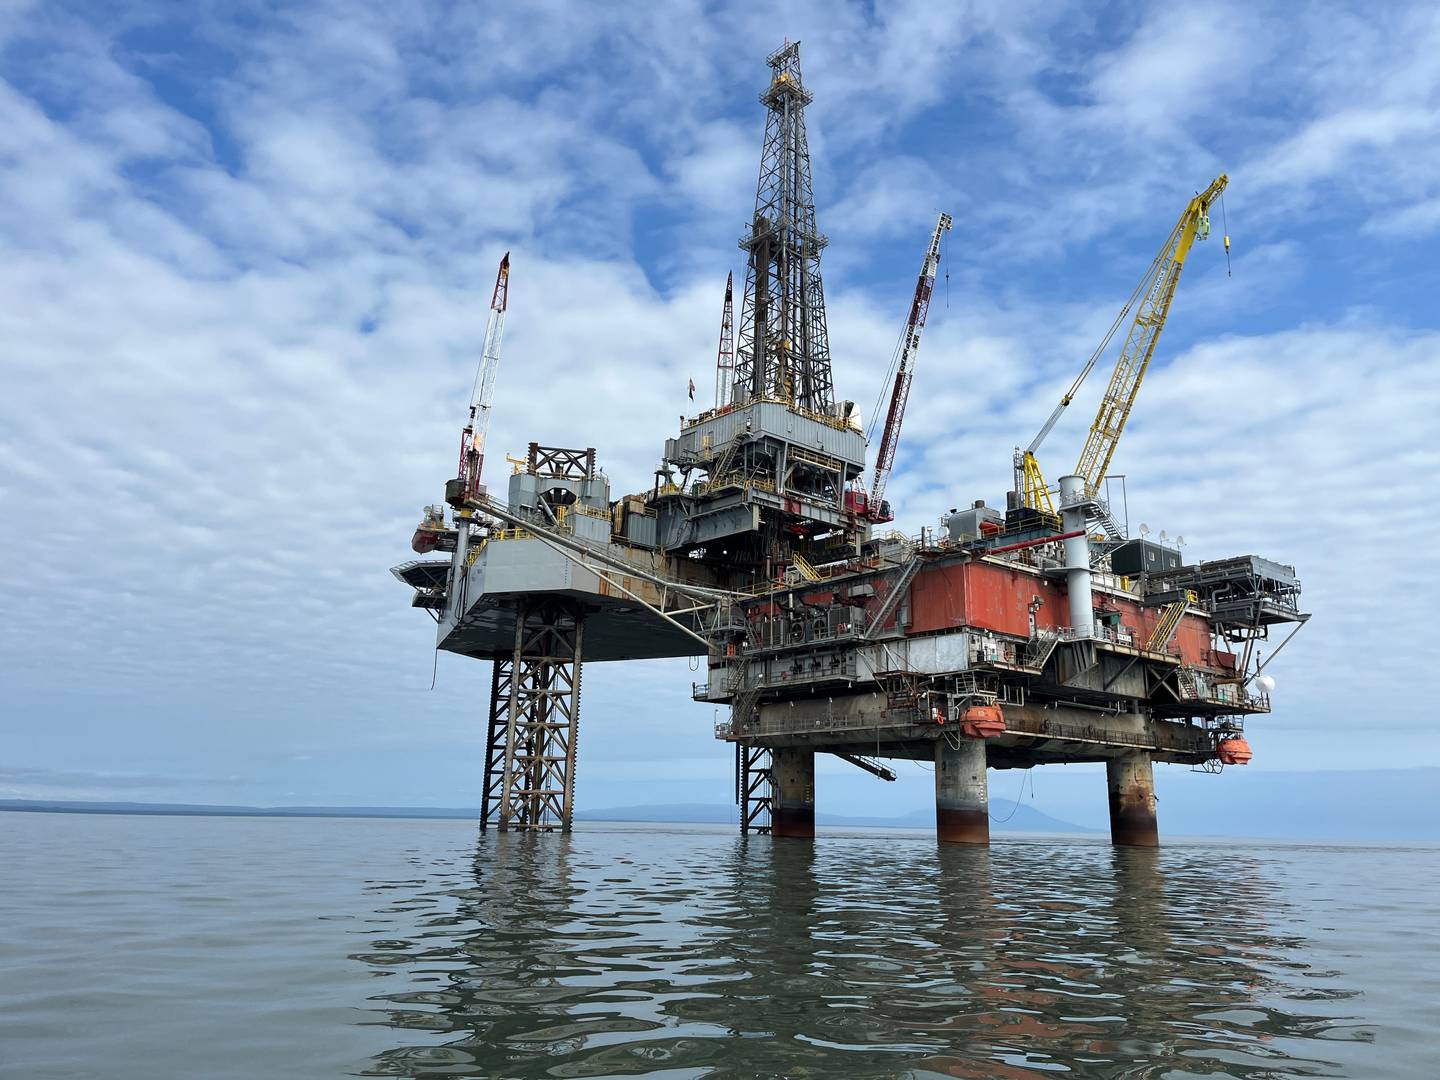 Mientras las compañías petroleras muestran poco interés, el gobierno federal cancela sus planes de perforación frente a las costas de Alaska.